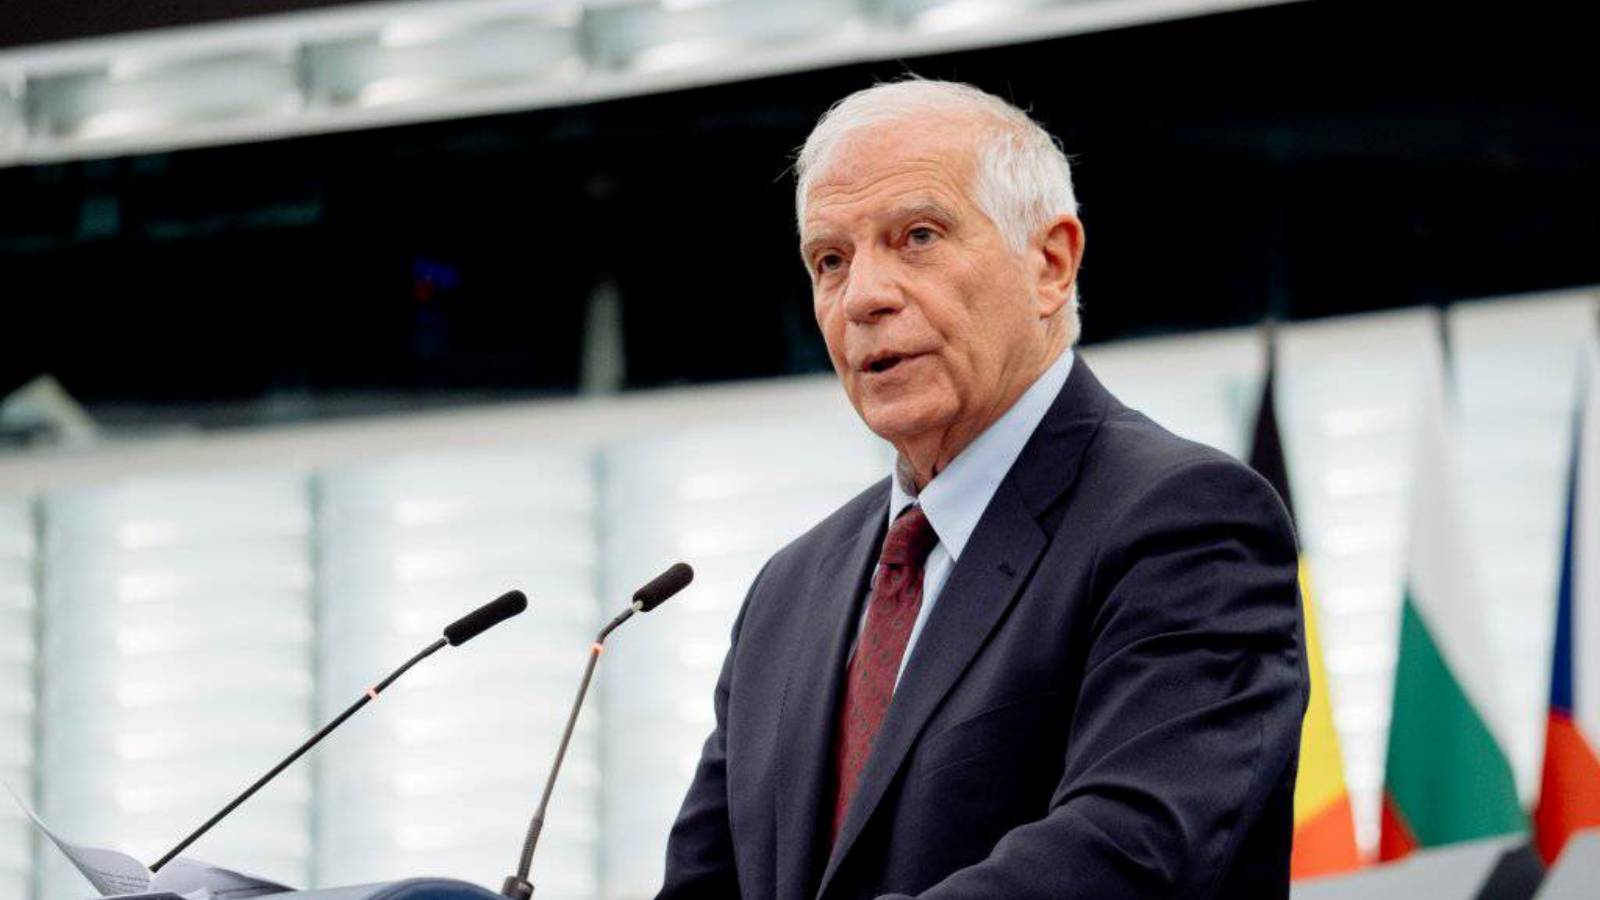 Josep Borrell wzywa, aby europejski przemysł obronny rozwinął się w przyczynę wojny na Ukrainie